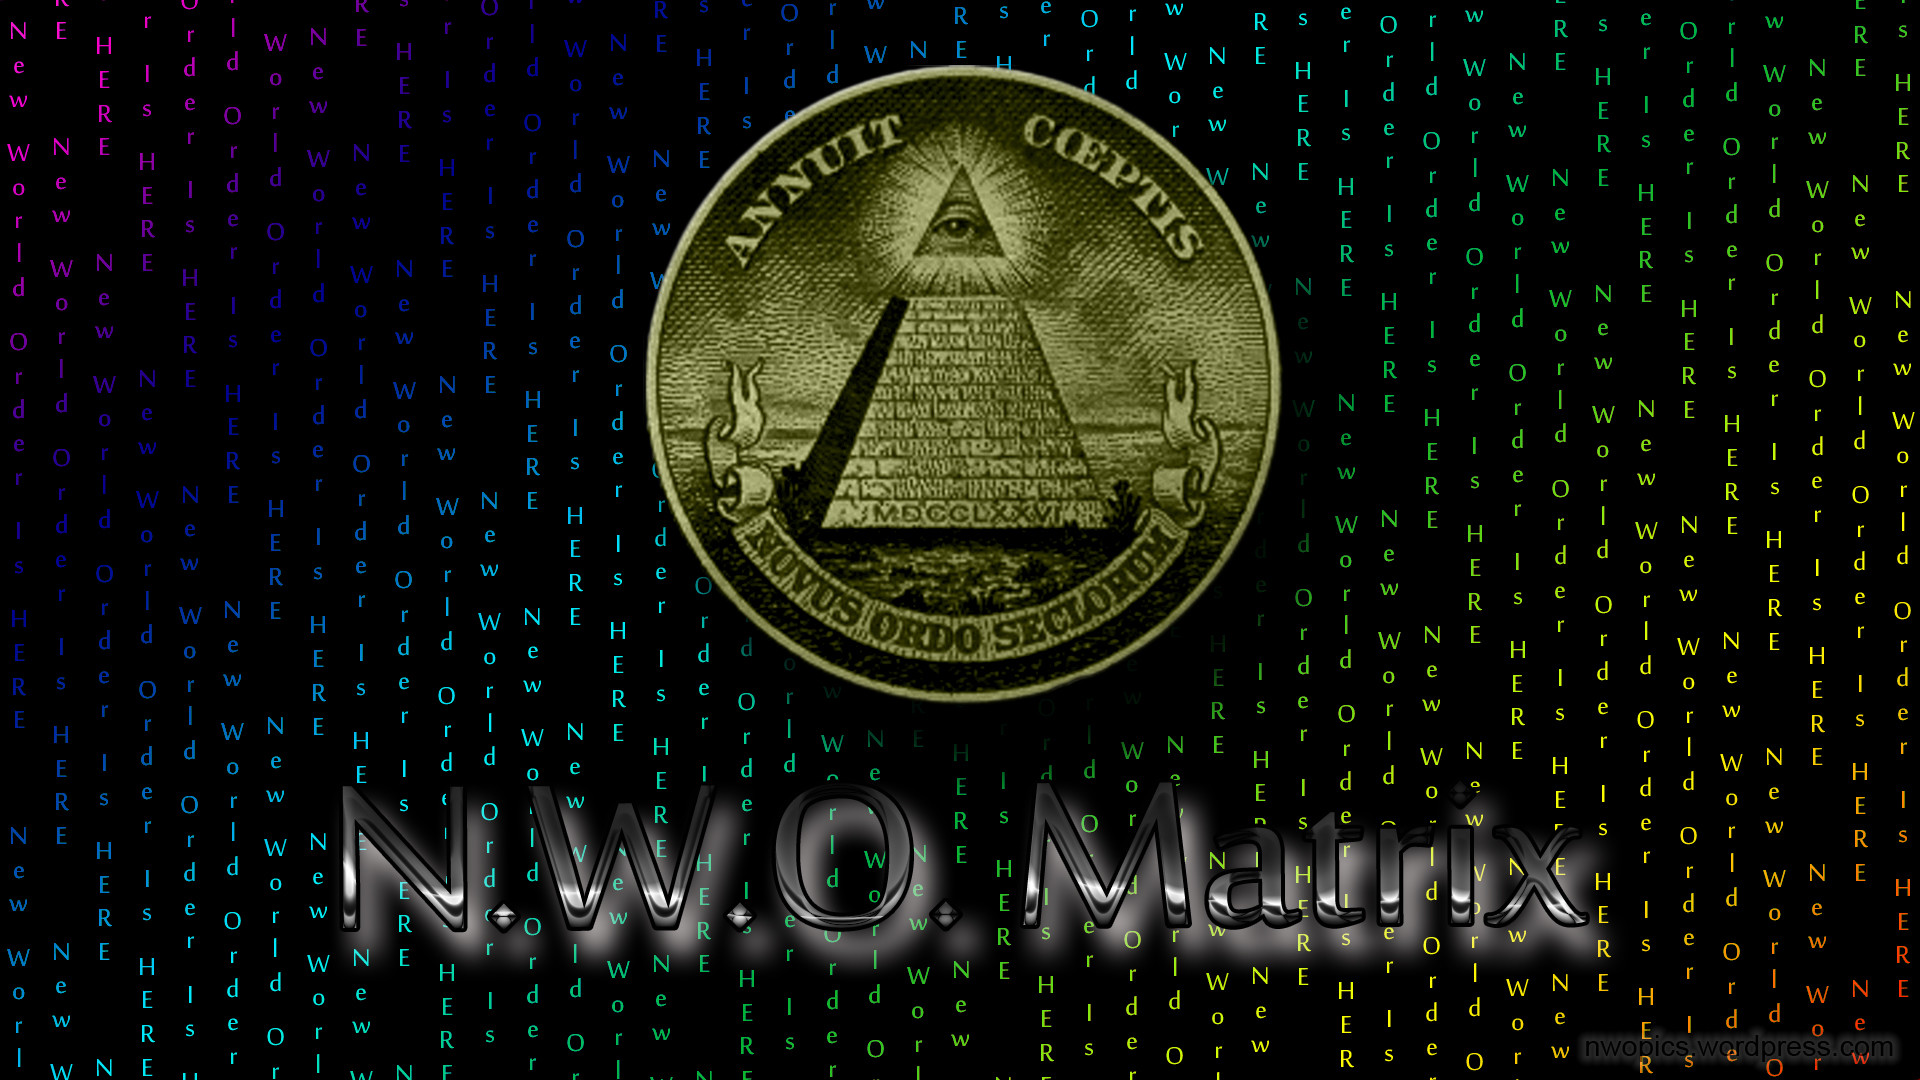 1920x1080 Illuminati New World Order Wallpaper 2016 Illuminati New World Order  Wallpaper